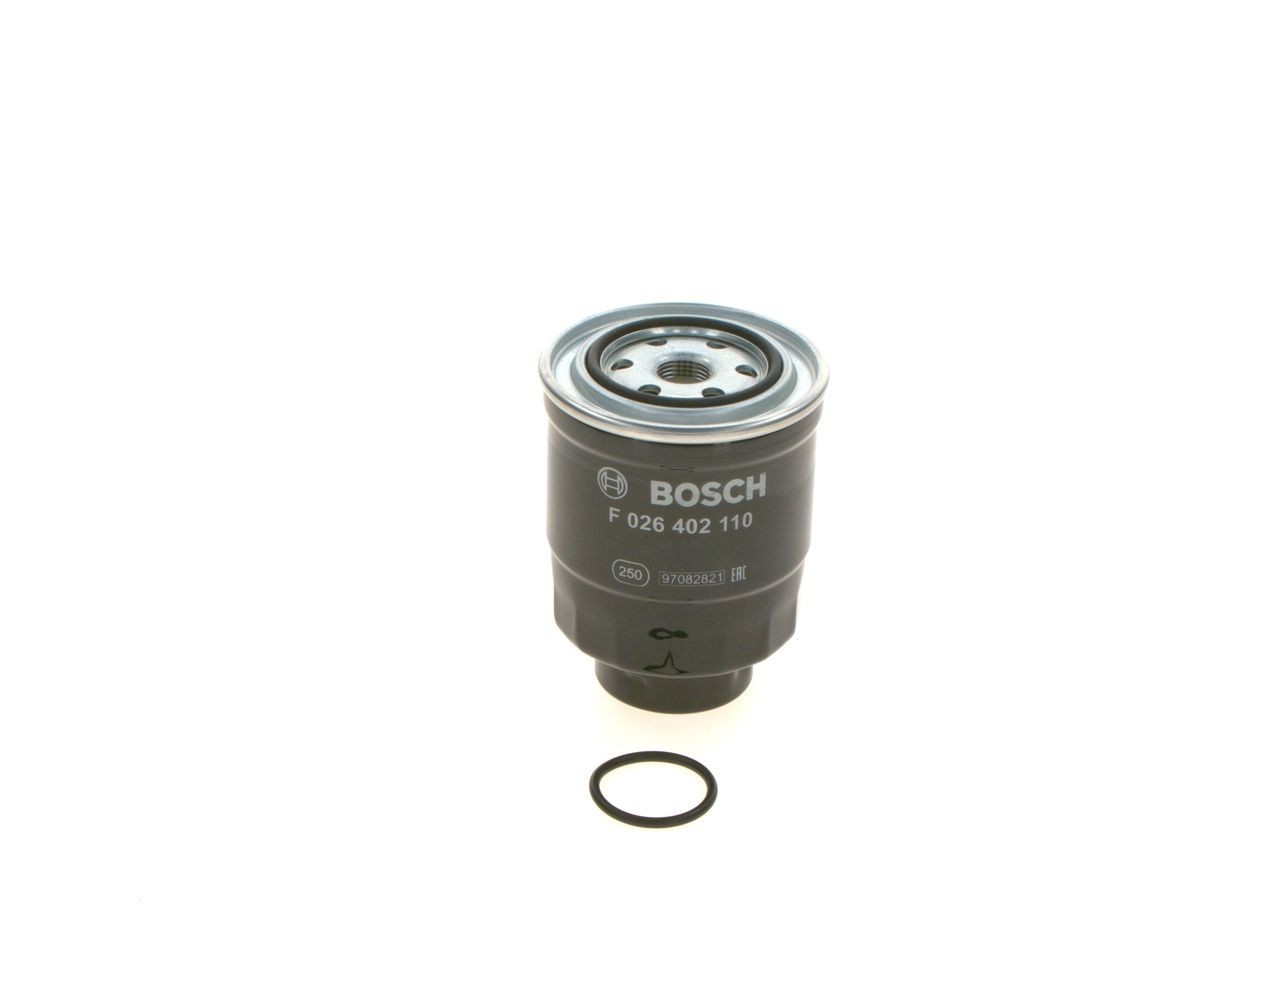 F026402110 Fuel filter N 2110 BOSCH Spin-on Filter